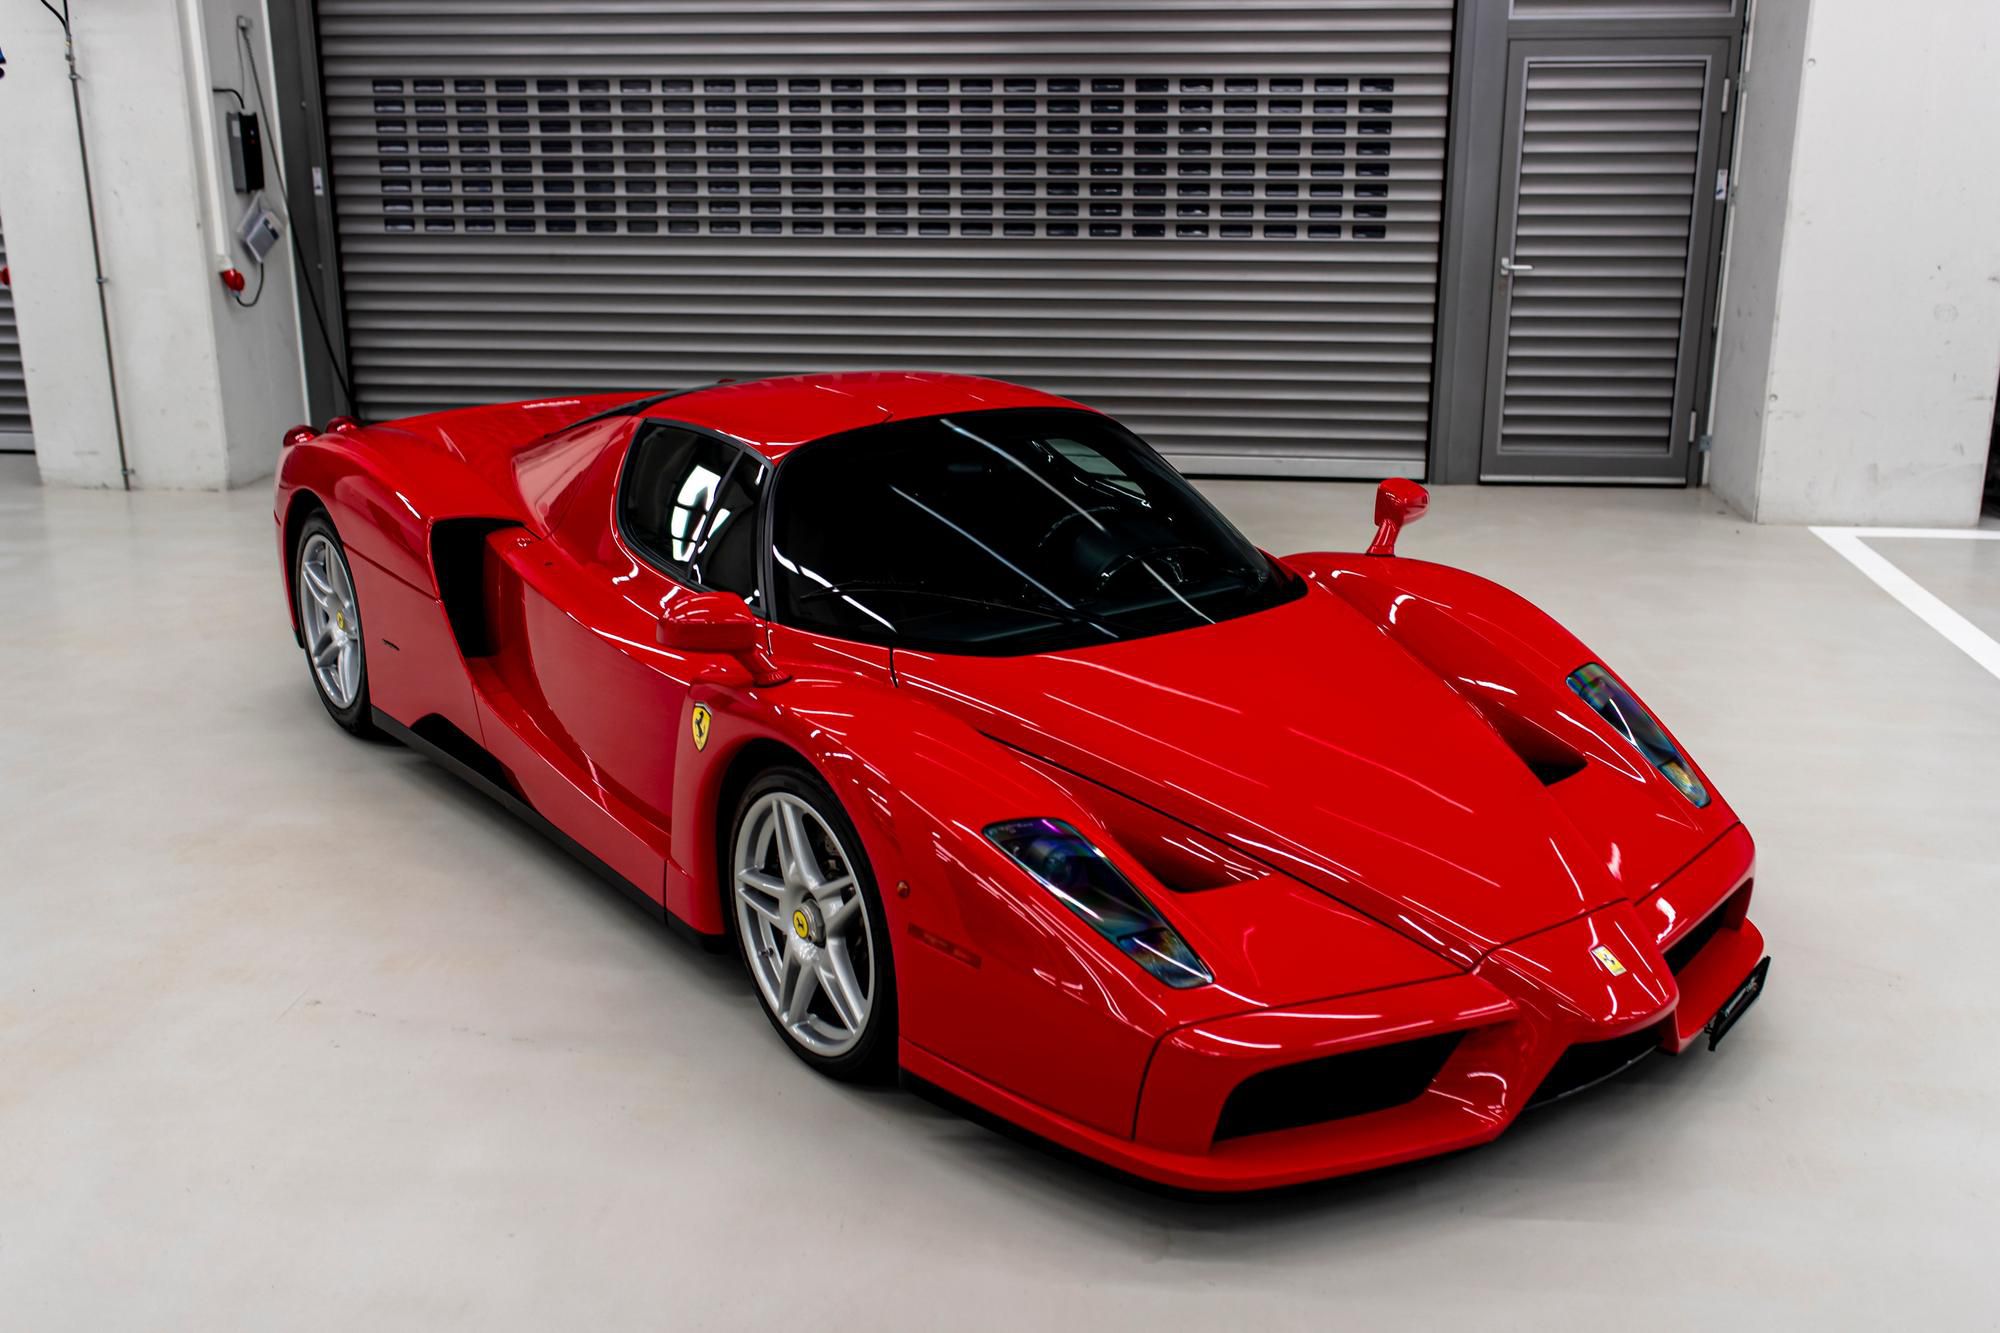 Ferrari Enzo 2004 - Enzo je najcennejšie auto, ktoré Sebastian Vettel vlastní a ešte ho nepredal. Díler Tom Hartley, ktorý sprostredkúva predaj, ho označil za najlepší kúsok, aký je na svete na predaj. Toto auto má 6-litrový motor V12 a obsahuje aj technológie F1. Má poloautomatickú prevodovku a pôvodne bolo predané do Nemecka - odtiaľ si ho už obstaral samotný Sebastian Vettel. Na tachometri je len 1 790 kilometrov.